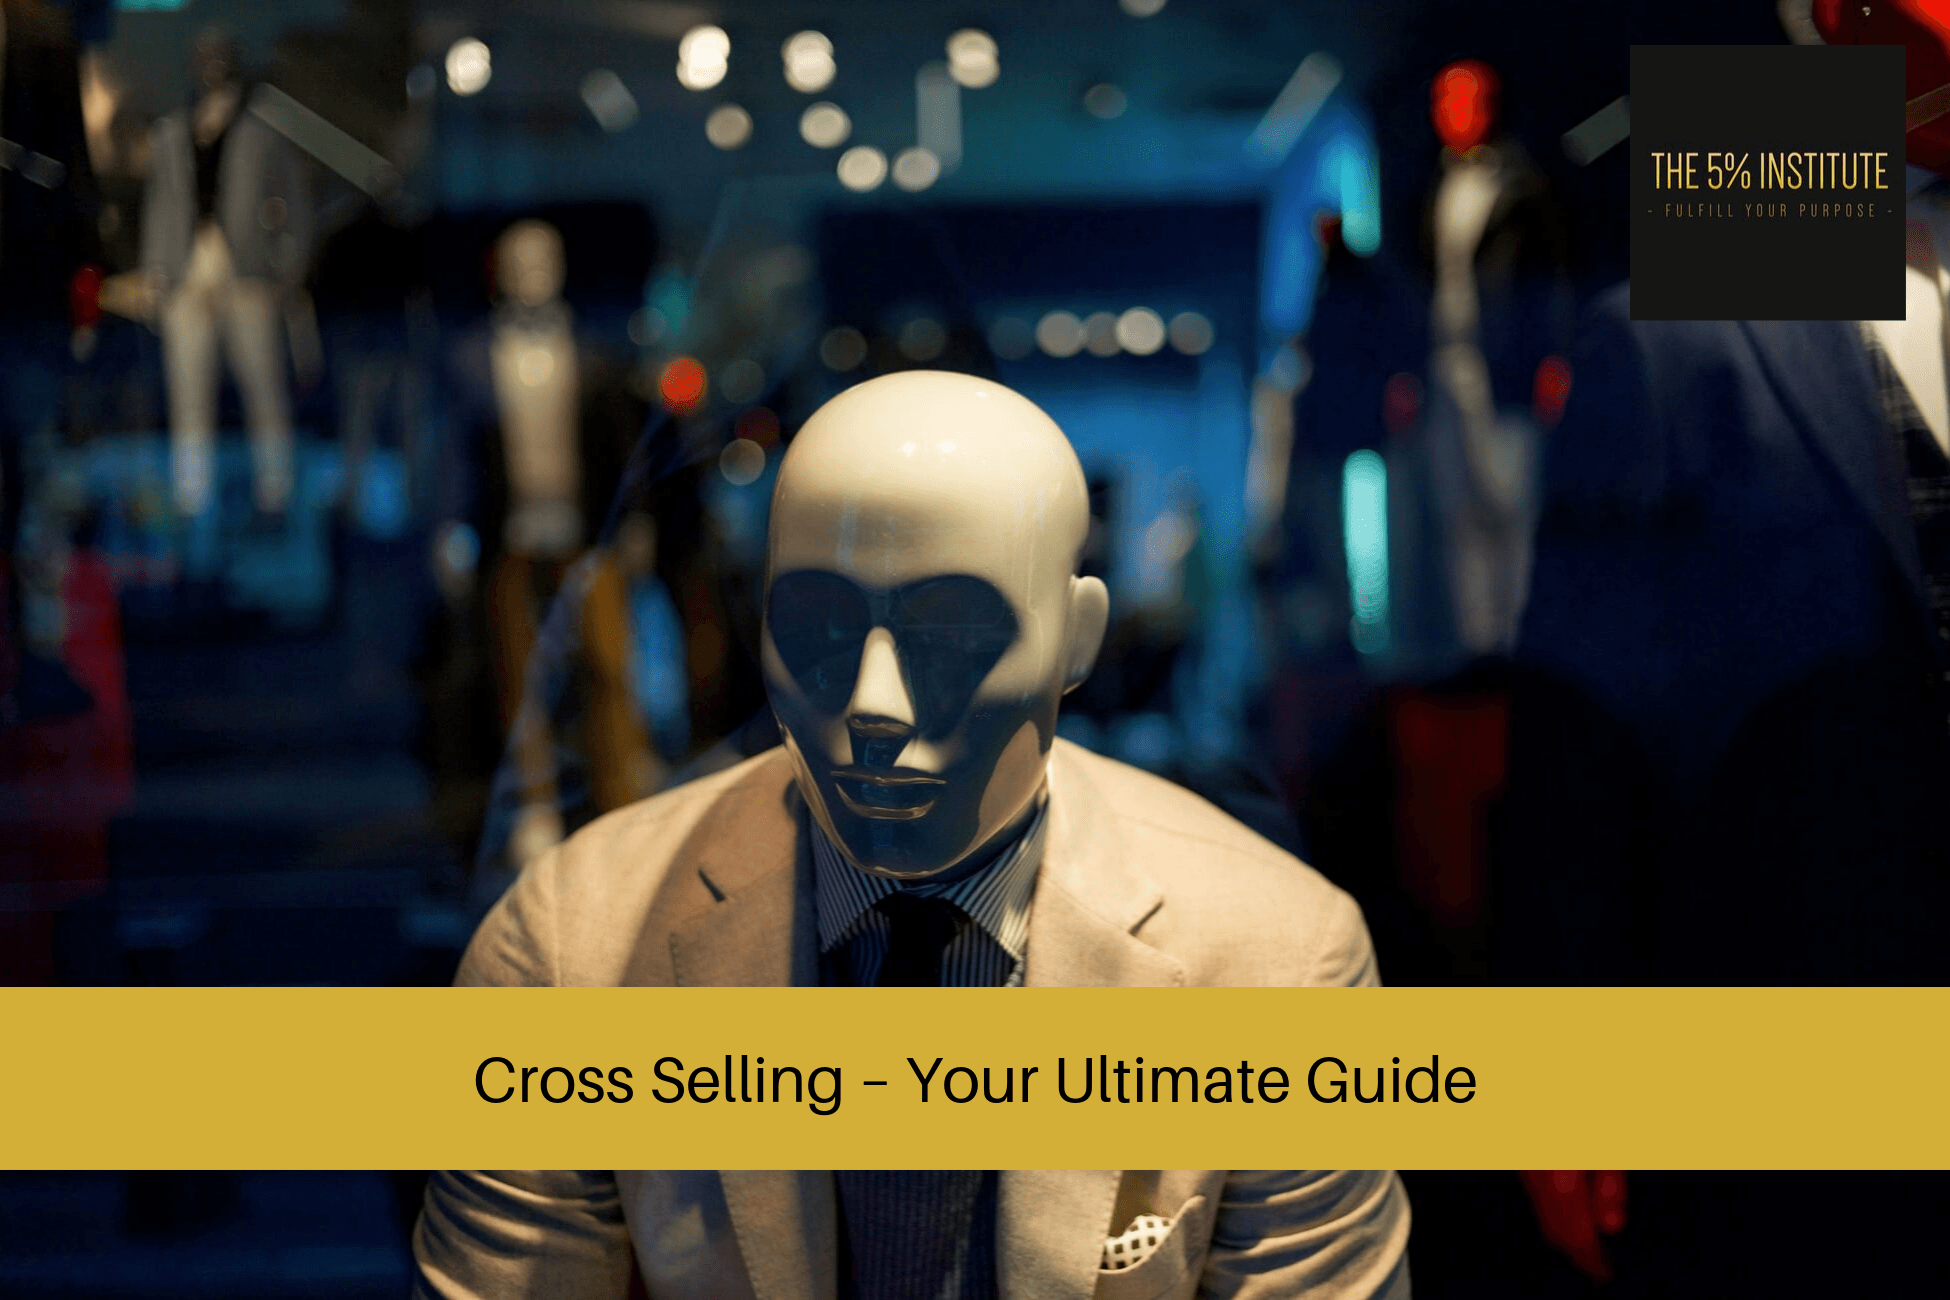 cross selling